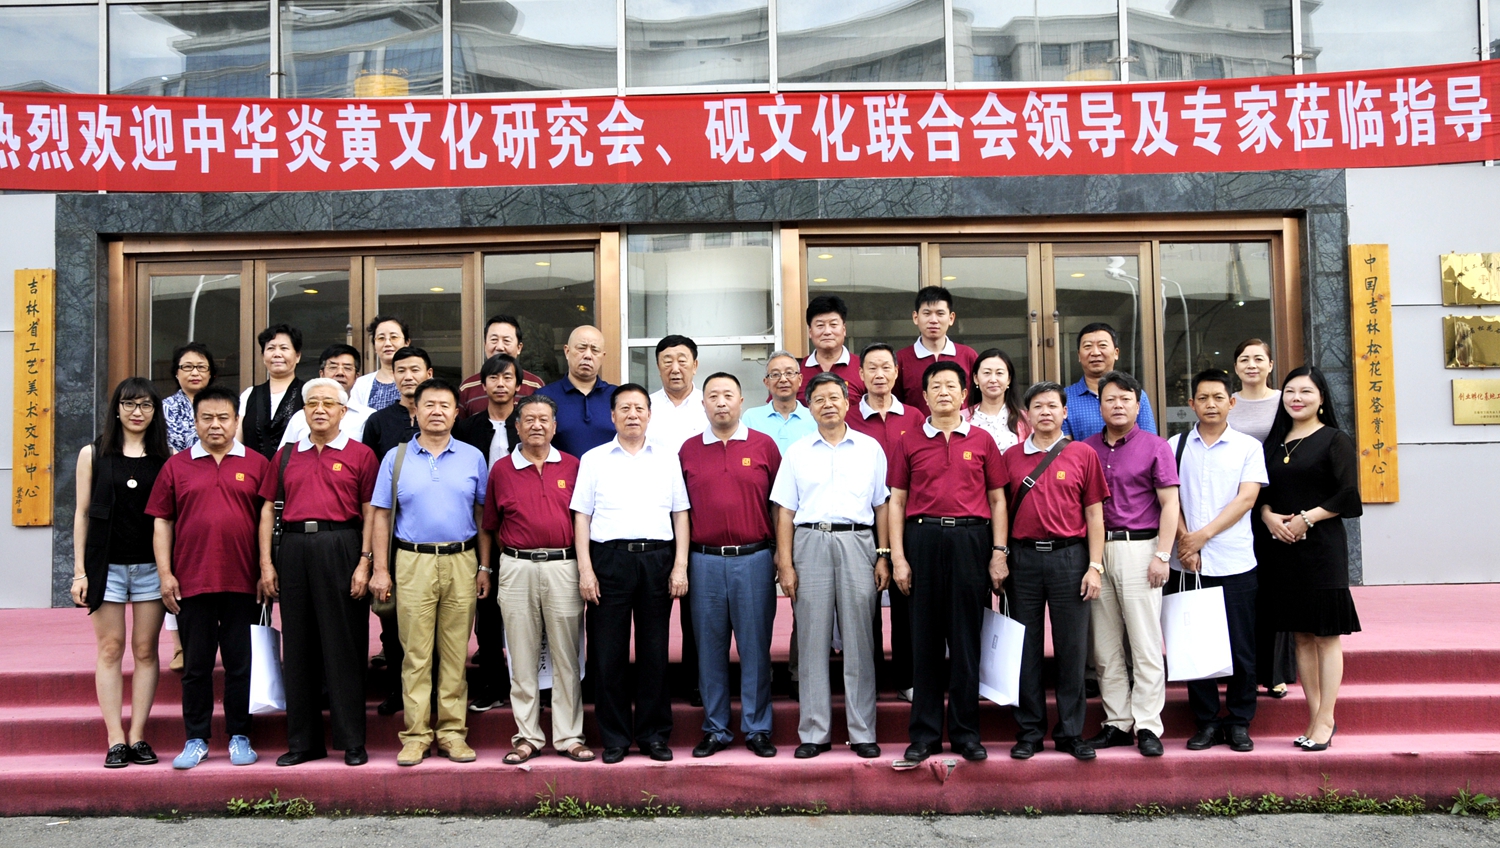 中华砚文化代表团参观考察八吉工美集团并举行座谈会